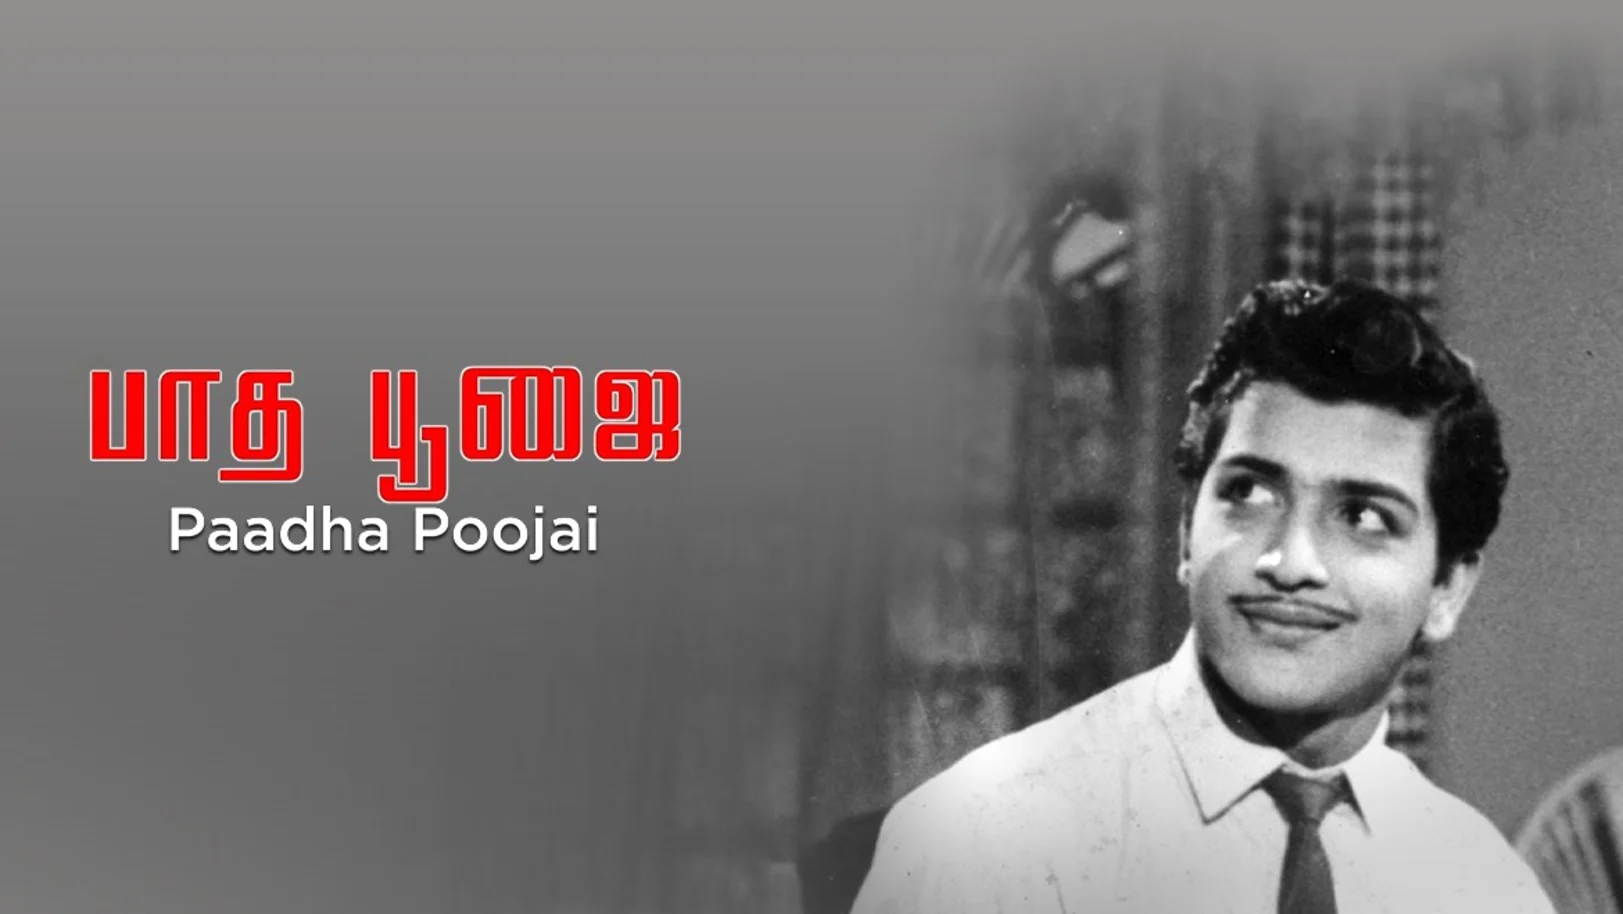 Paadha Poojai Movie